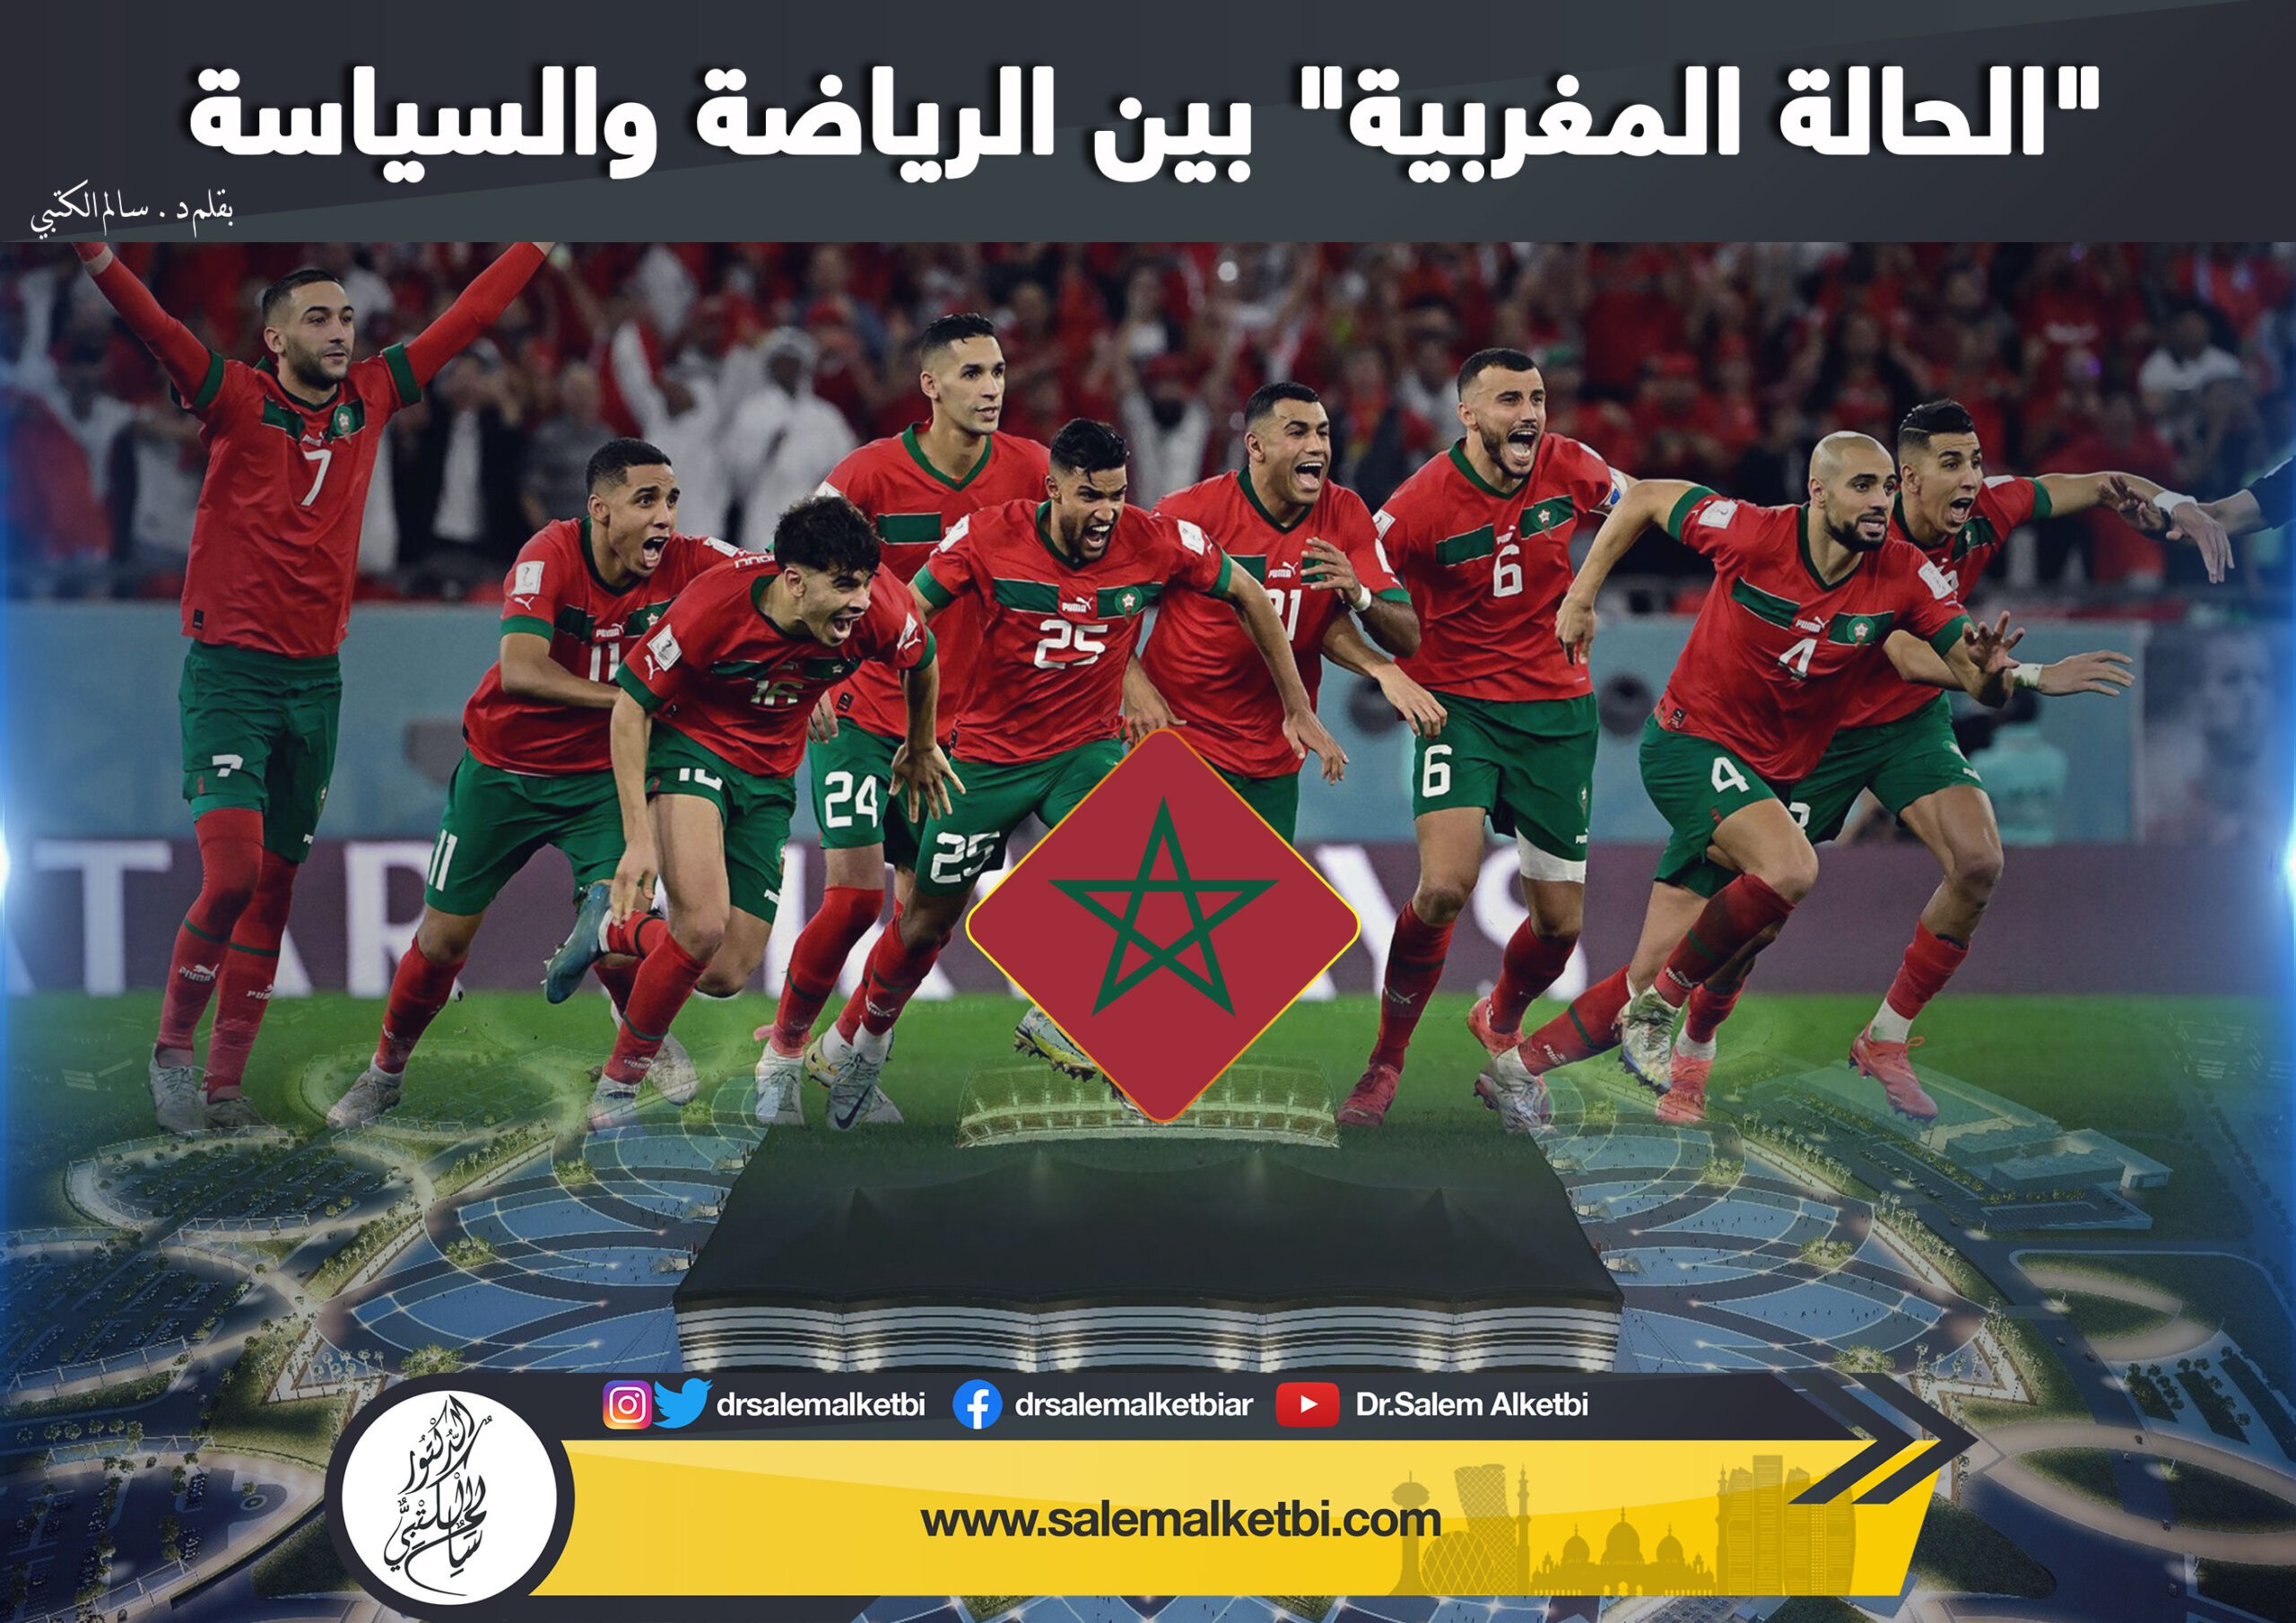 « الحالة المغربية » بين الرياضة والسياسة